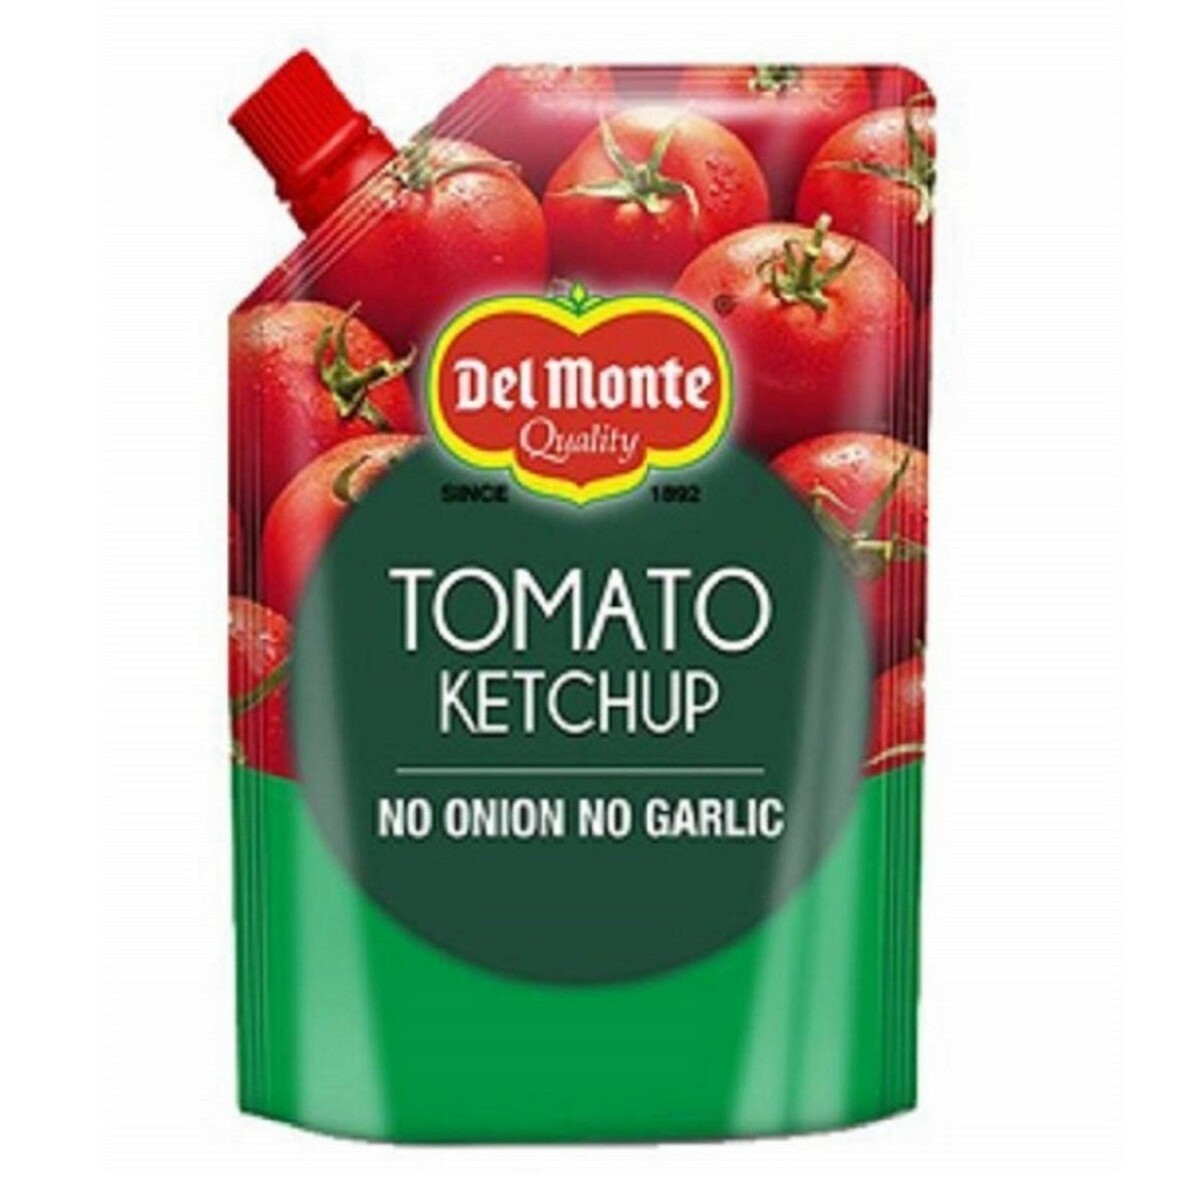 DelMonte Tomato Ketchup No Onion & Garlic 900g